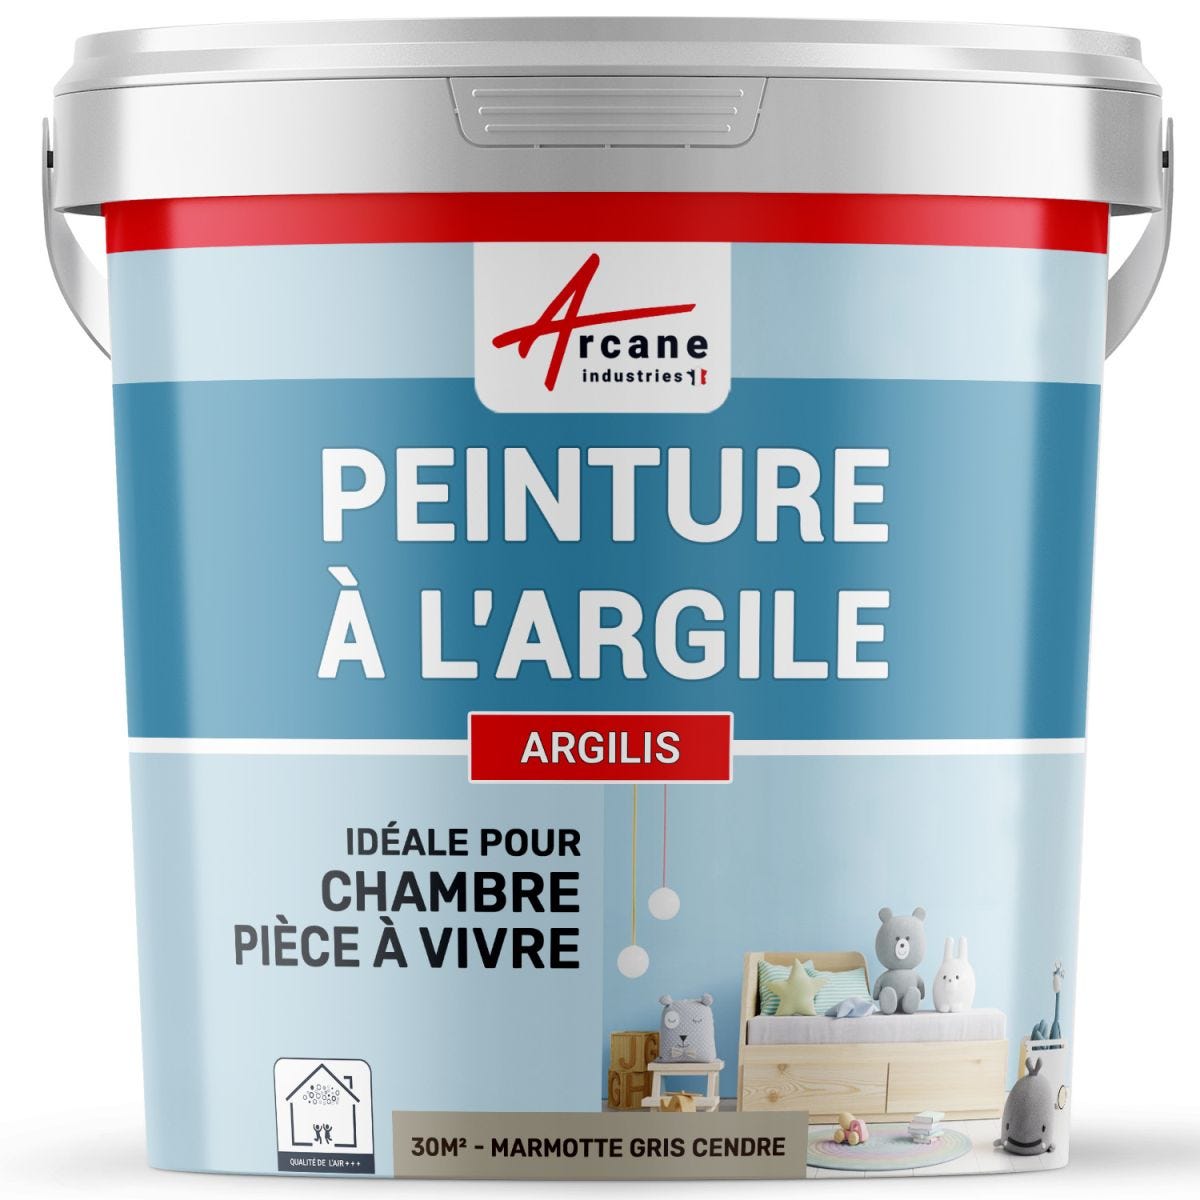 PEINTURE ARGILE naturelle et saine - ARGILIS Marmotte Gris Cendre - 30 m² (5 kg en 1 couche)ARCANE INDUSTRIES 5